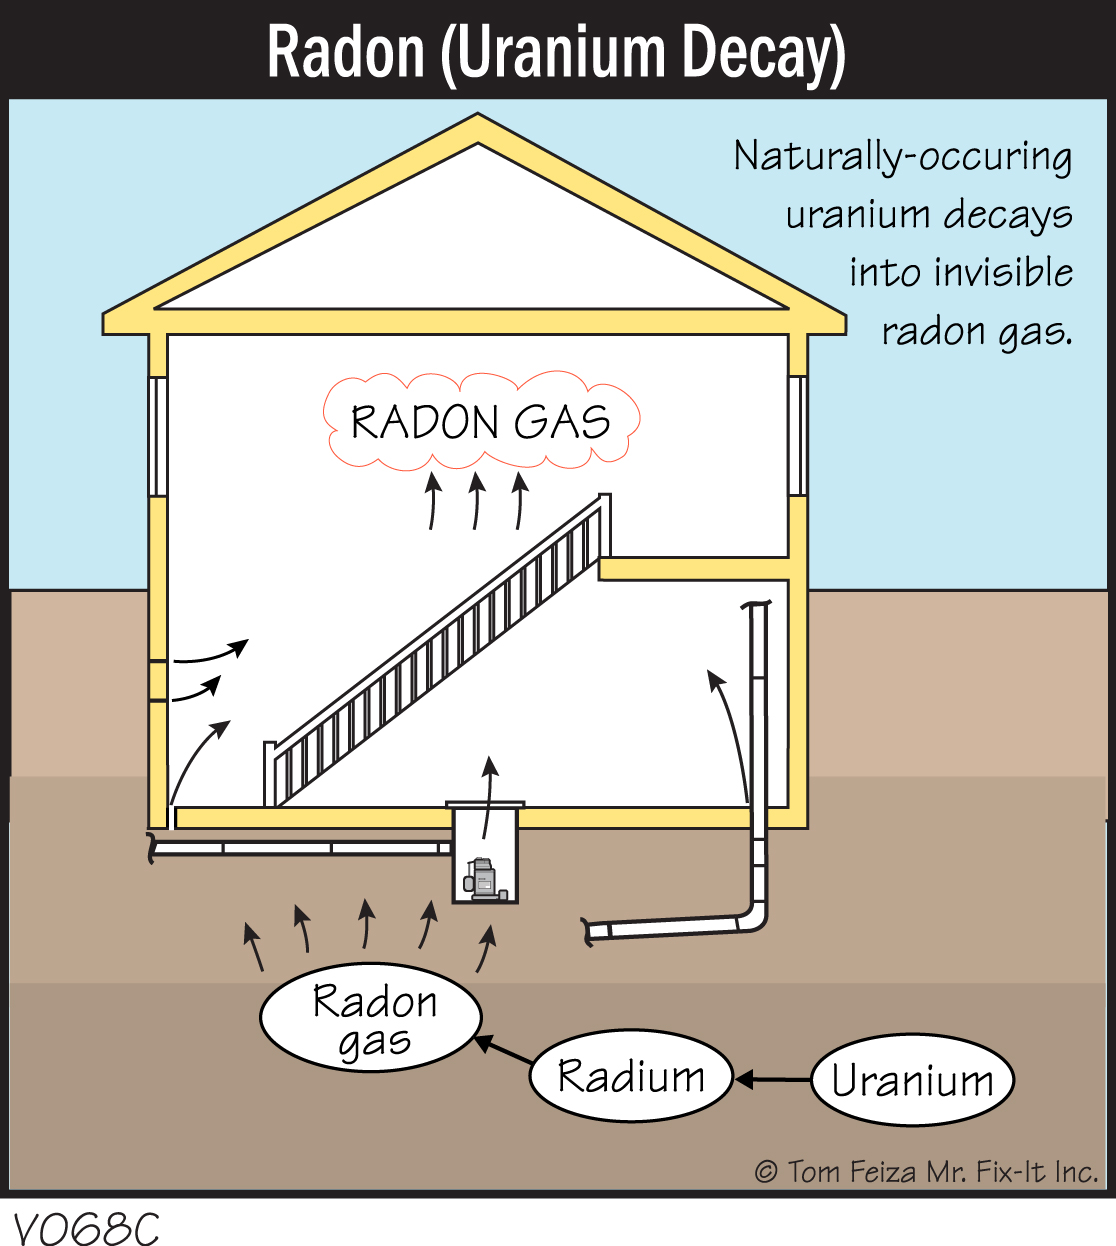 How is Radon Linked to Uranium?